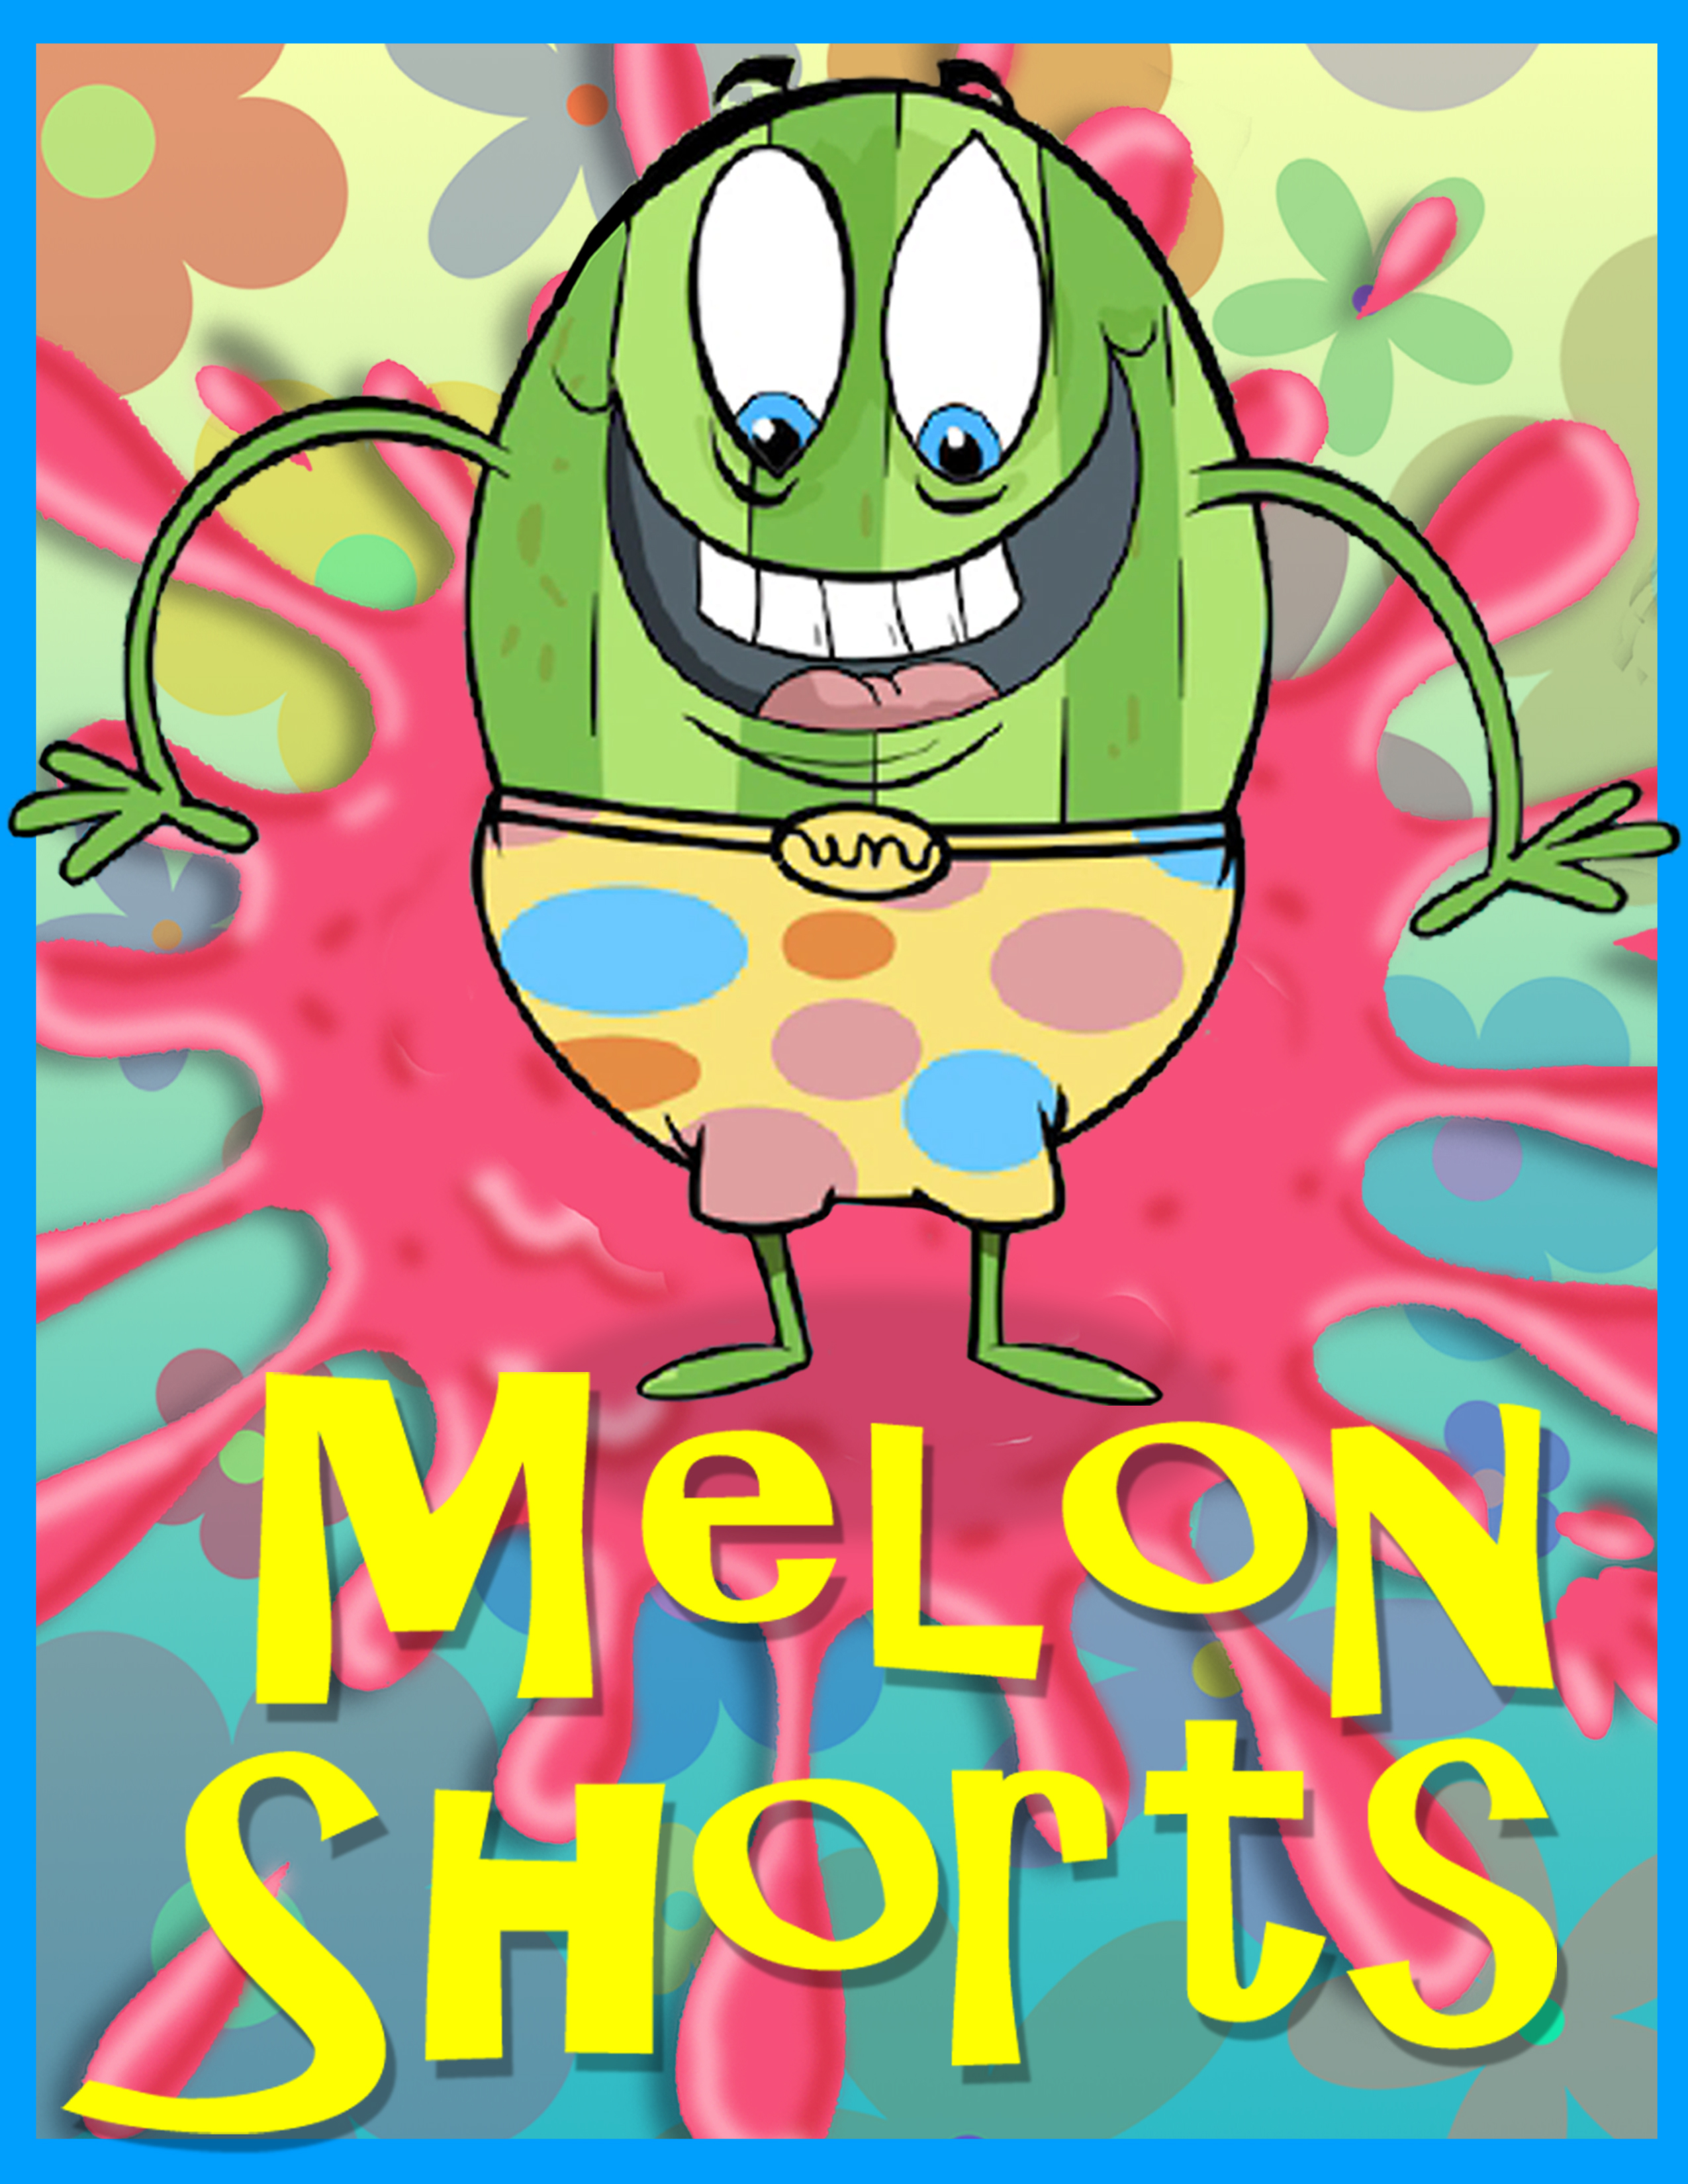 The MELON SHORTS